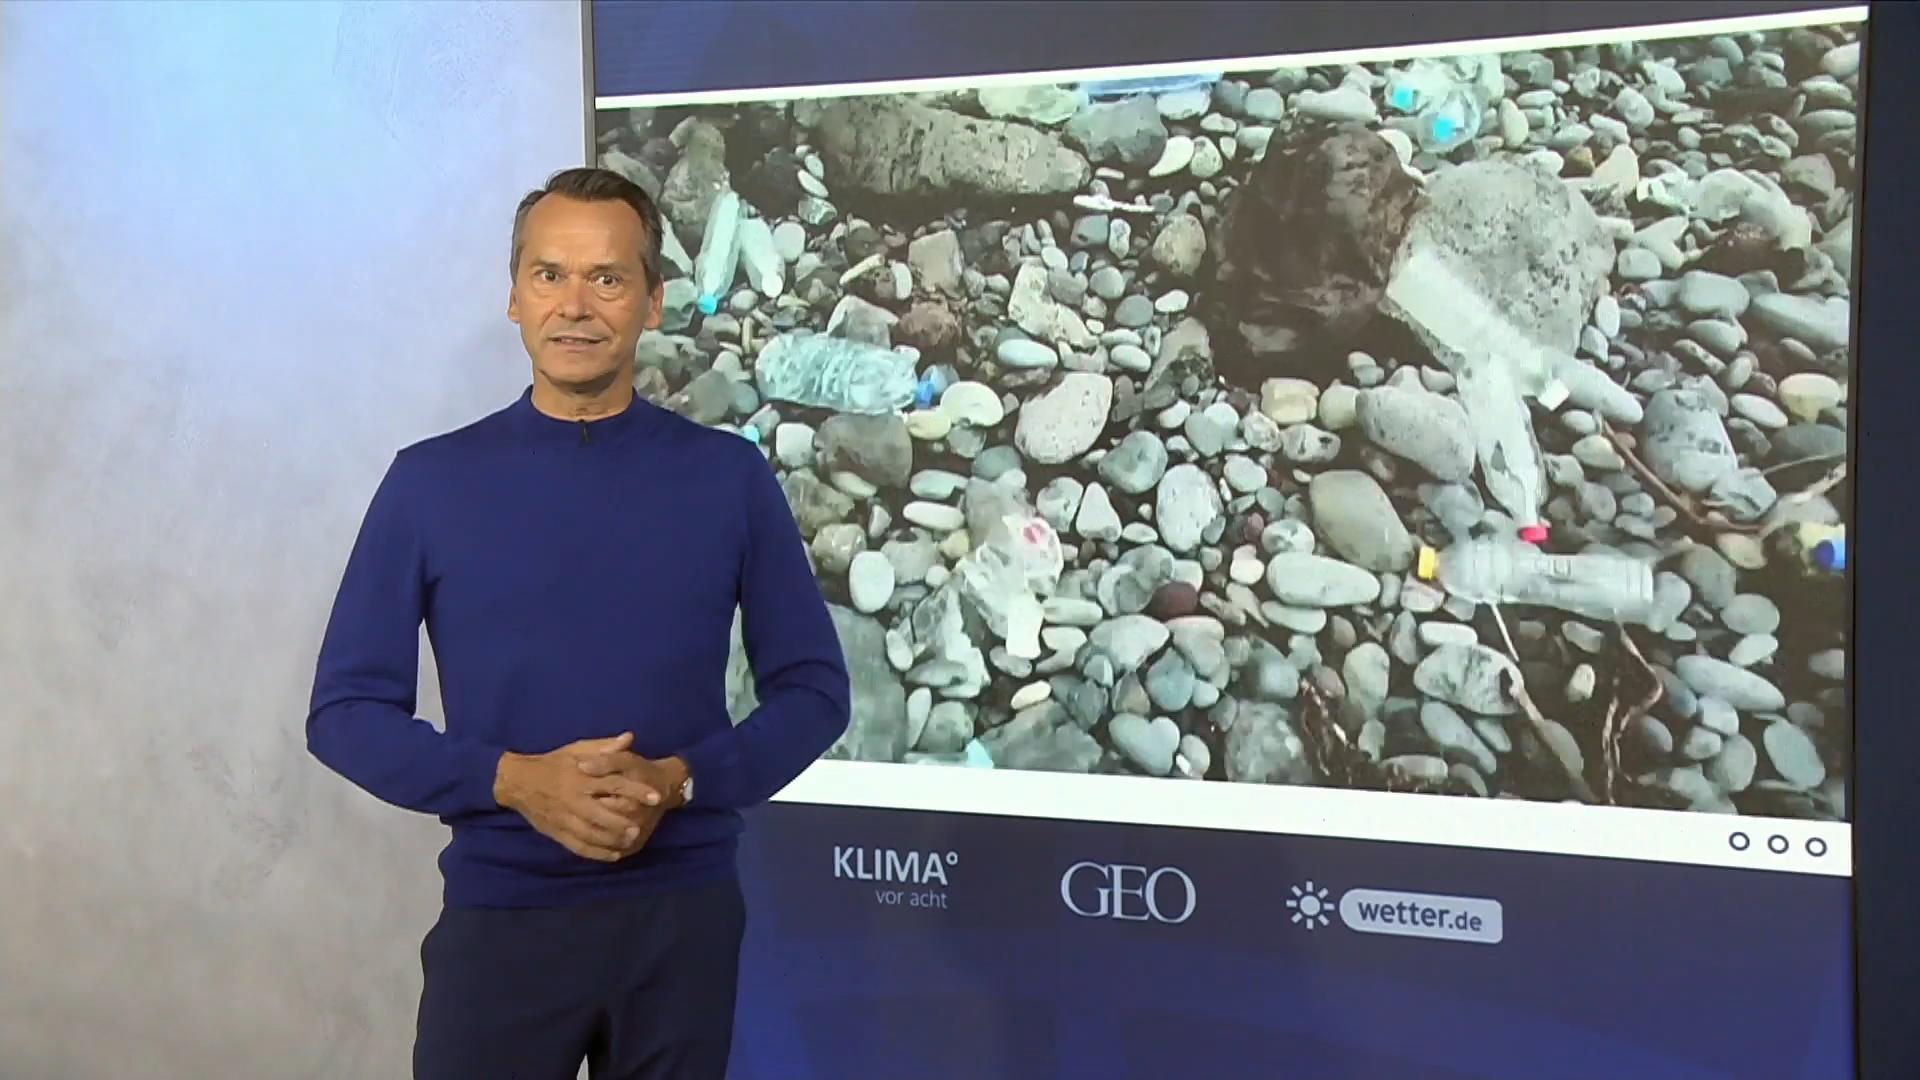 Plastikmüll wird ein immer größeres Problem Klima Update zum World-Cleanup-Day